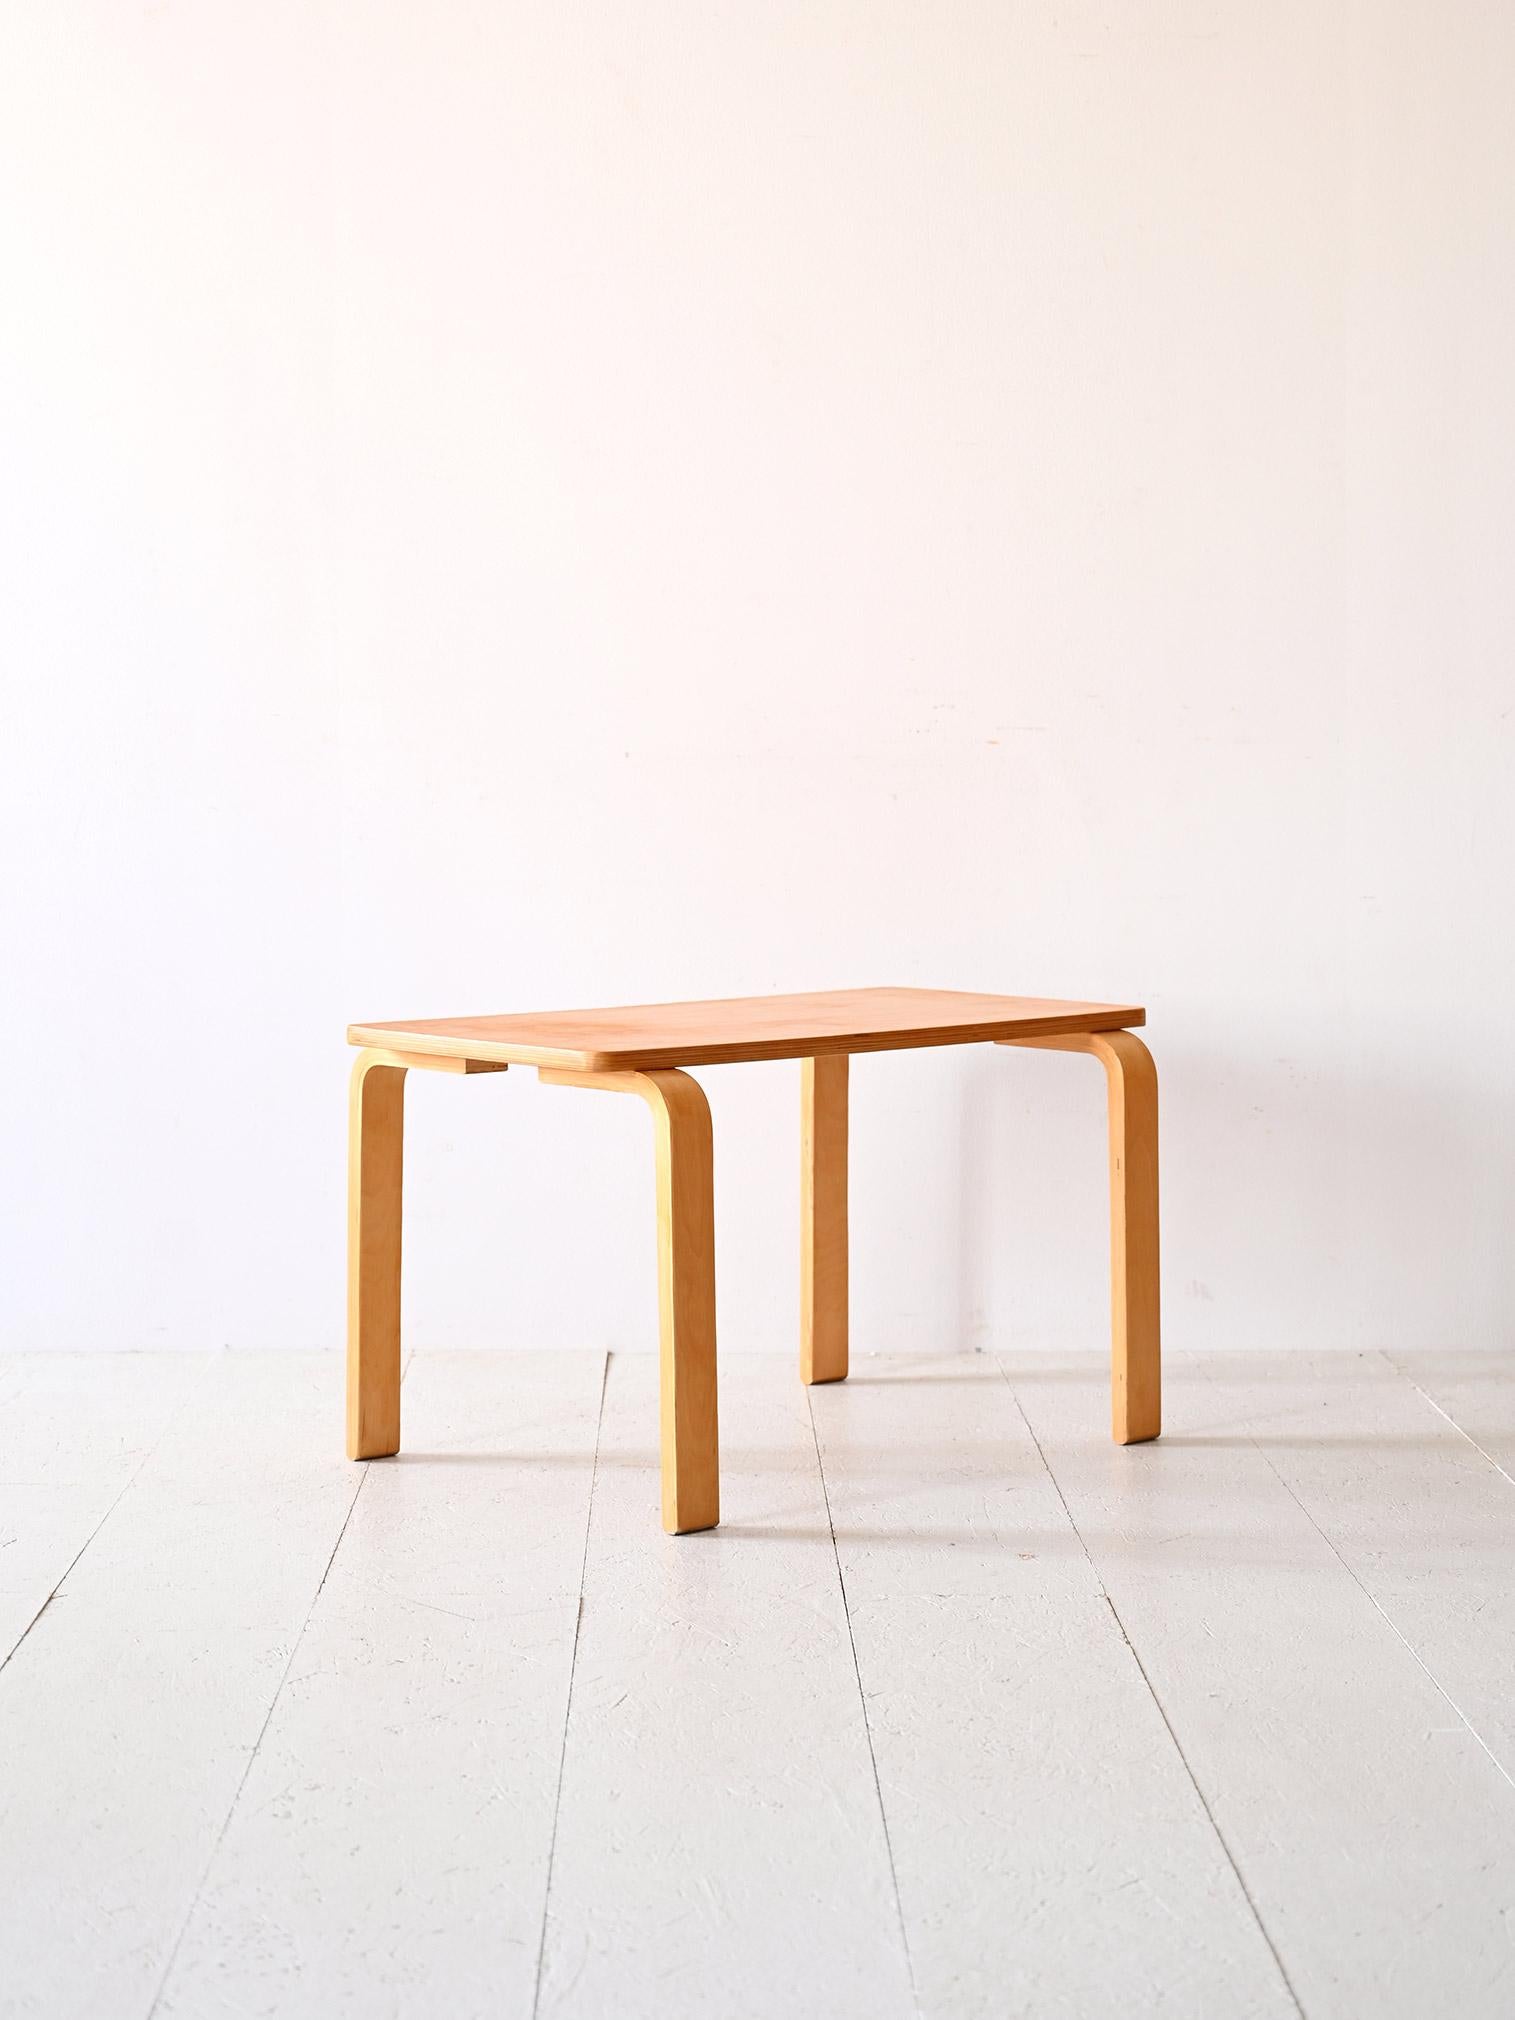 Scandinavian Modern Coffee Table attrib. a Alvar Aalto disegnato negli anni ‘30